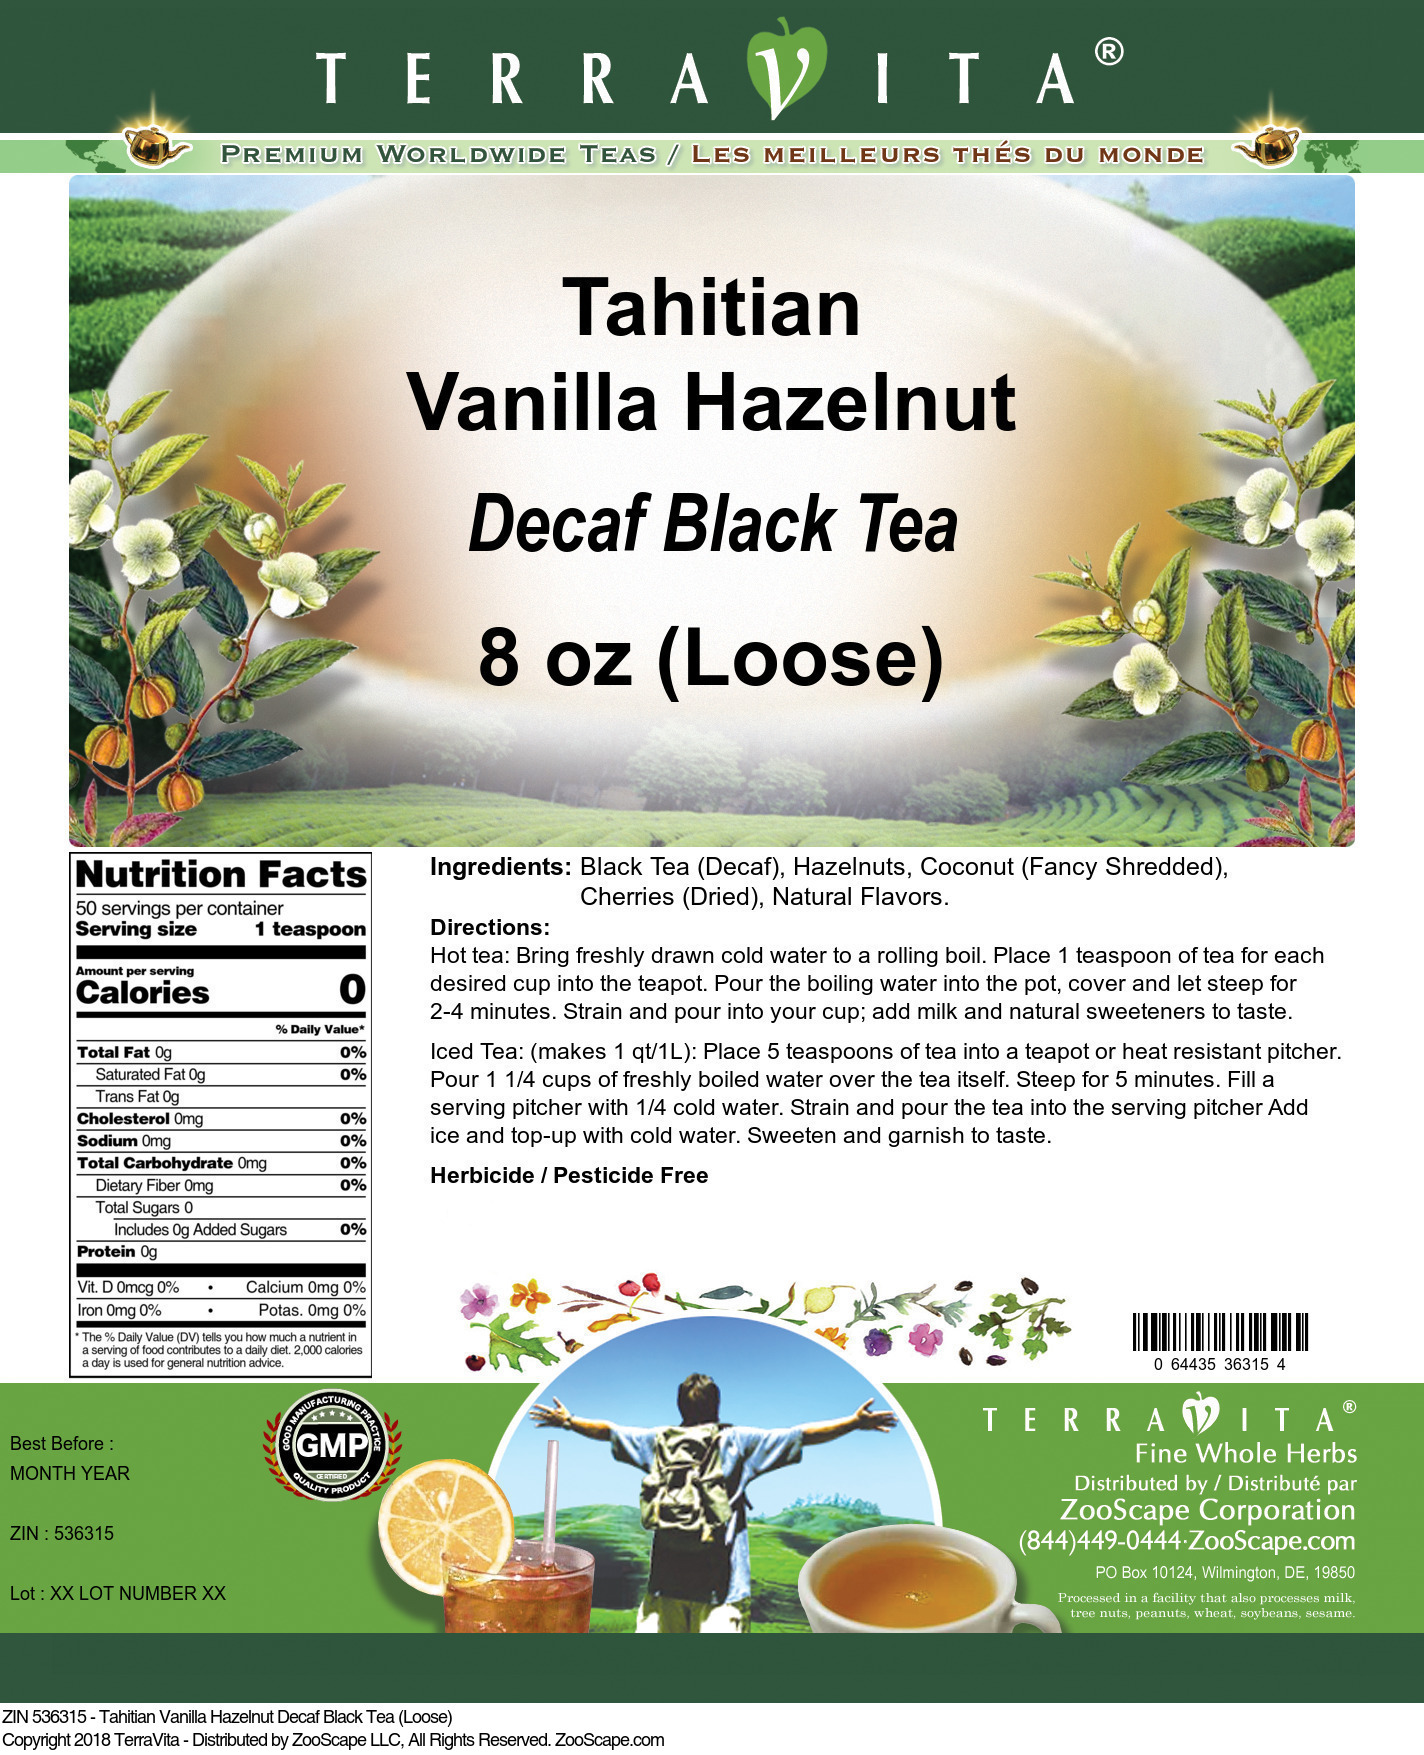 Tahitian Vanilla Hazelnut Decaf Black Tea (Loose) - Label